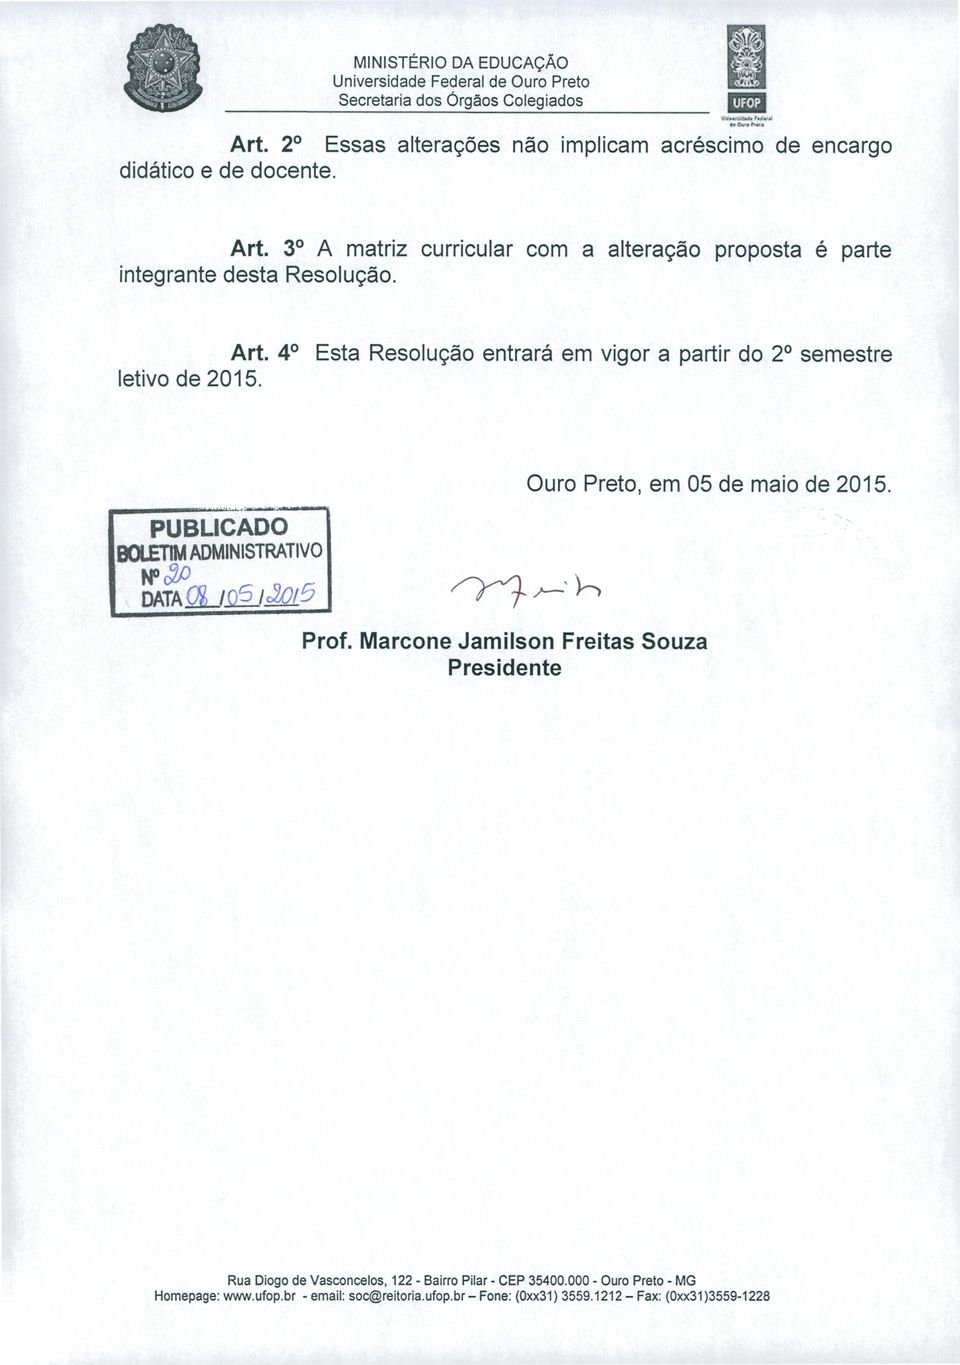 Marcone Jamilson Freitas Souza Presidente Ouro Preto, em 05 de maio de 205. Rua Diogo de Vasconcelos, 22 - Bairro Pilar - CEP 35400.